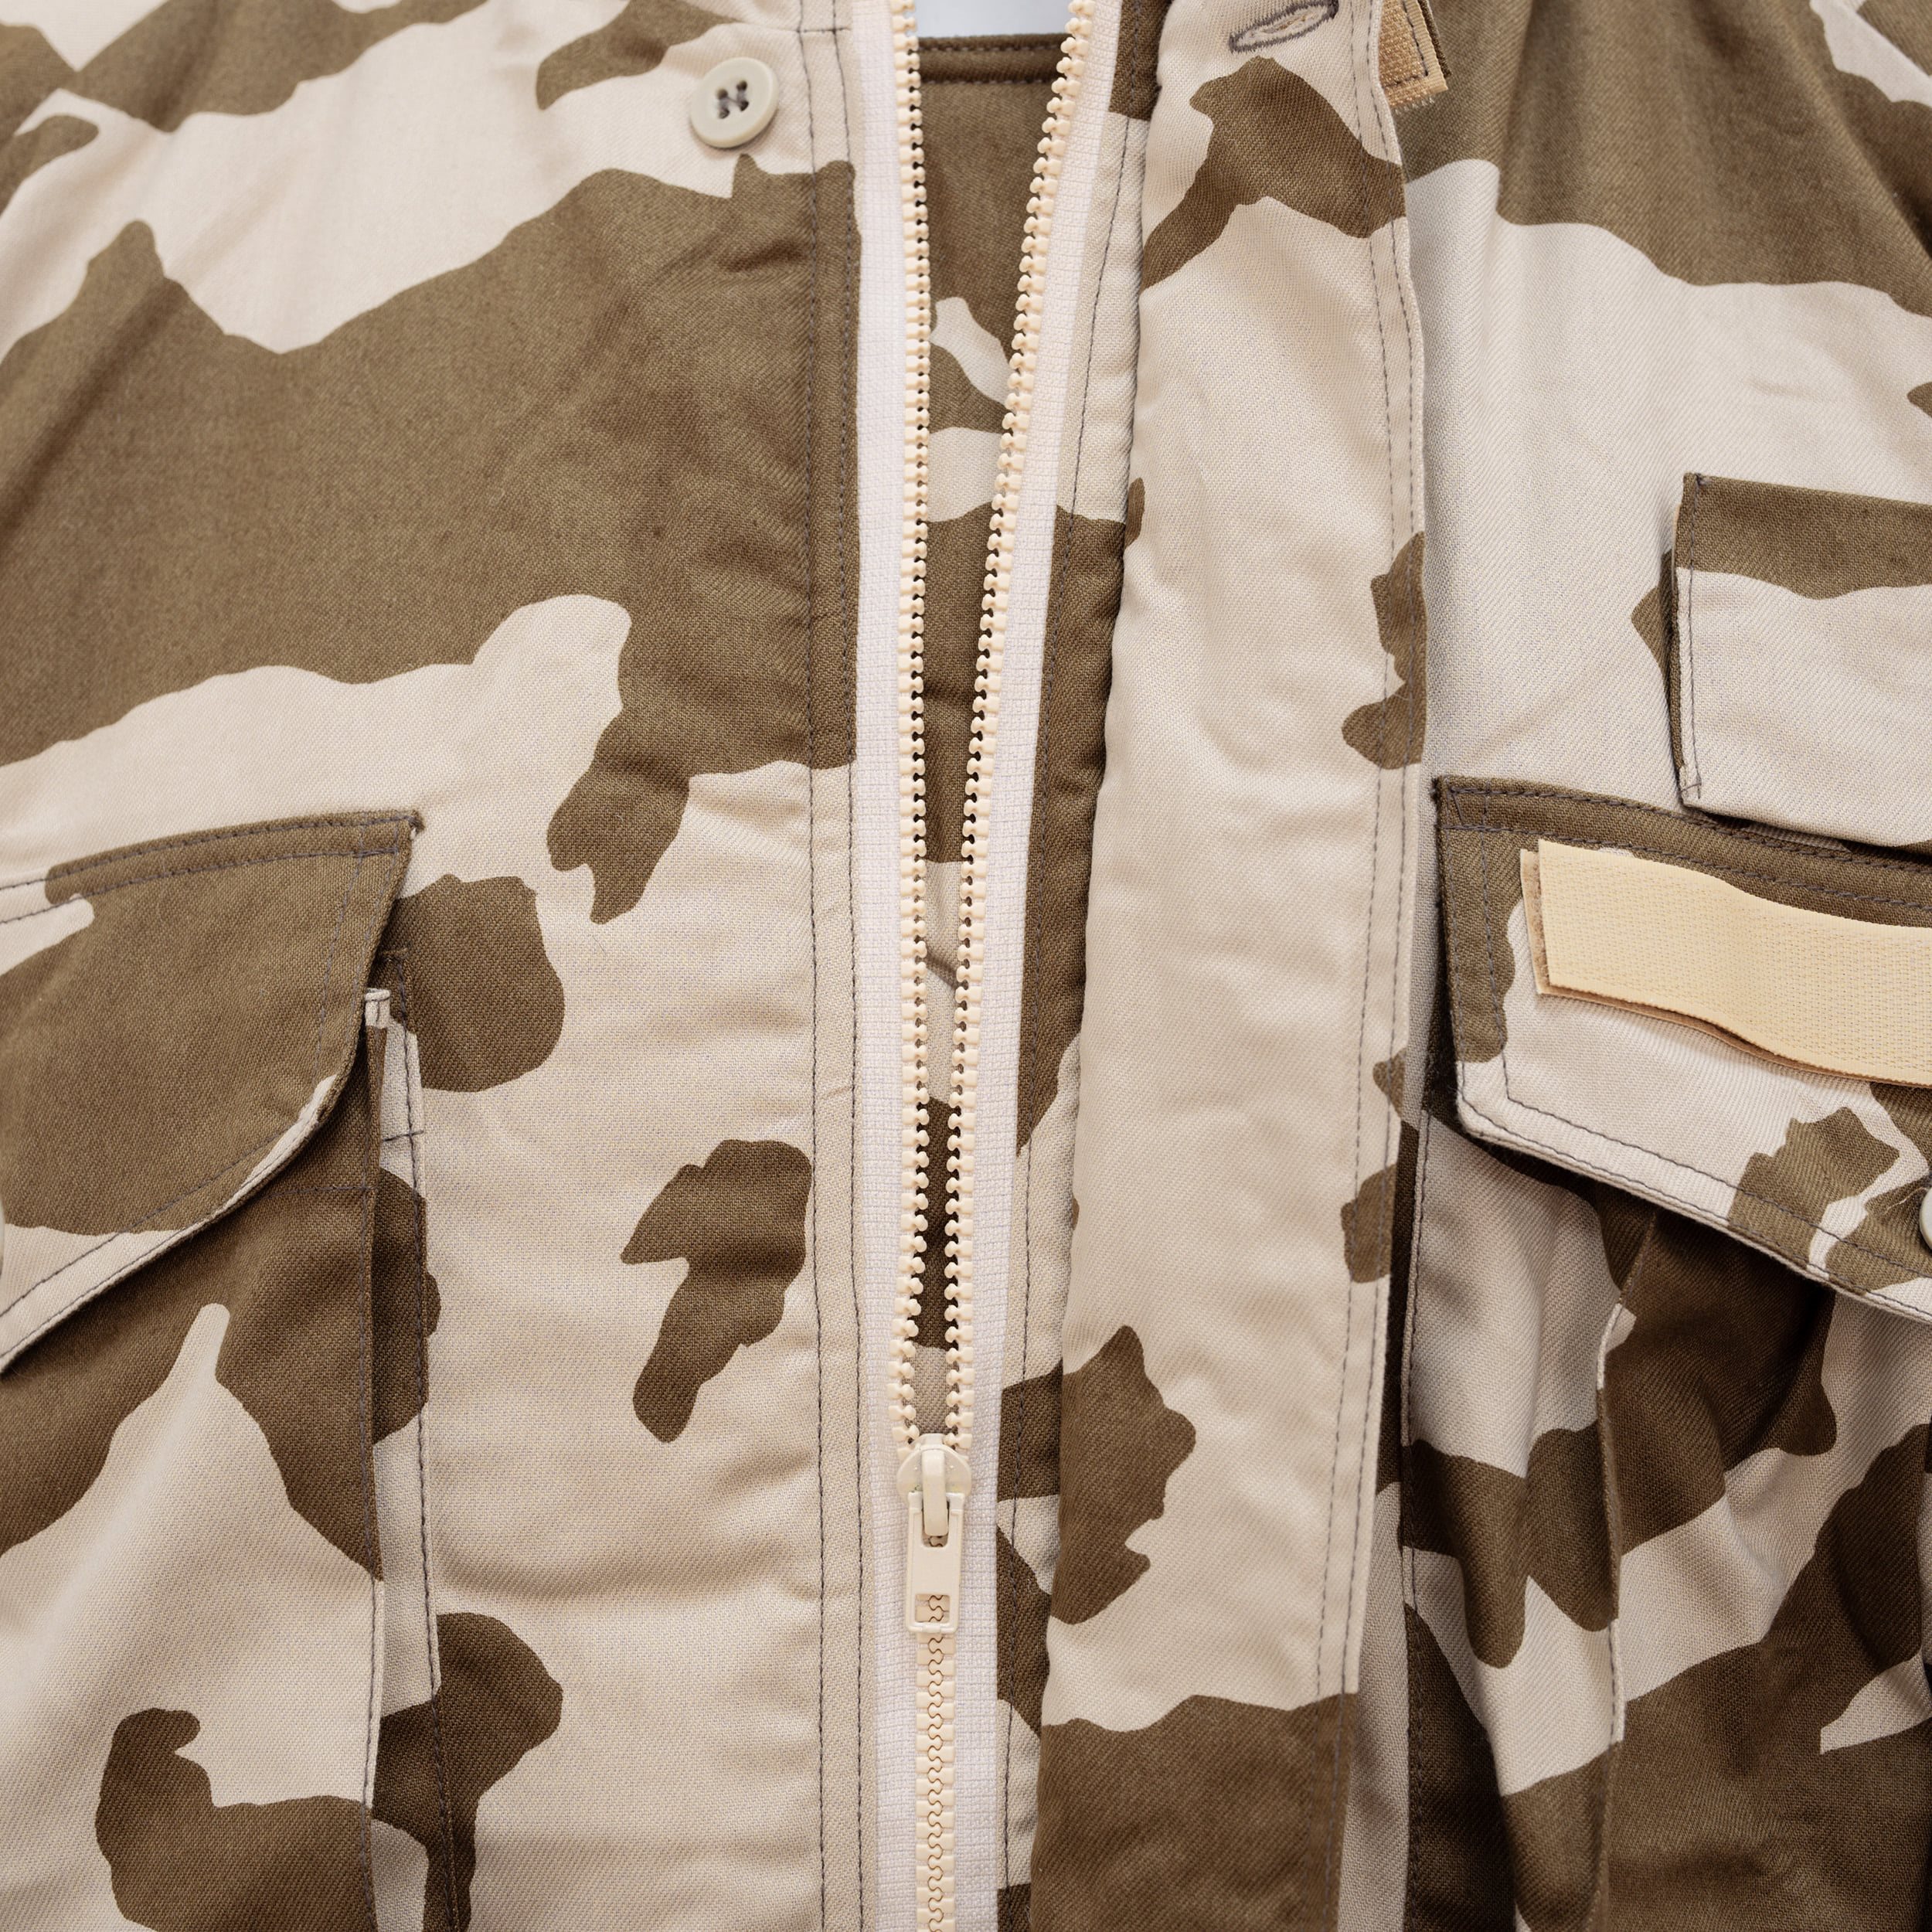 Jacket insulated Slovak OSSR / UN M97 Desert size XXL Slovak Army 72097D/XXL L-11